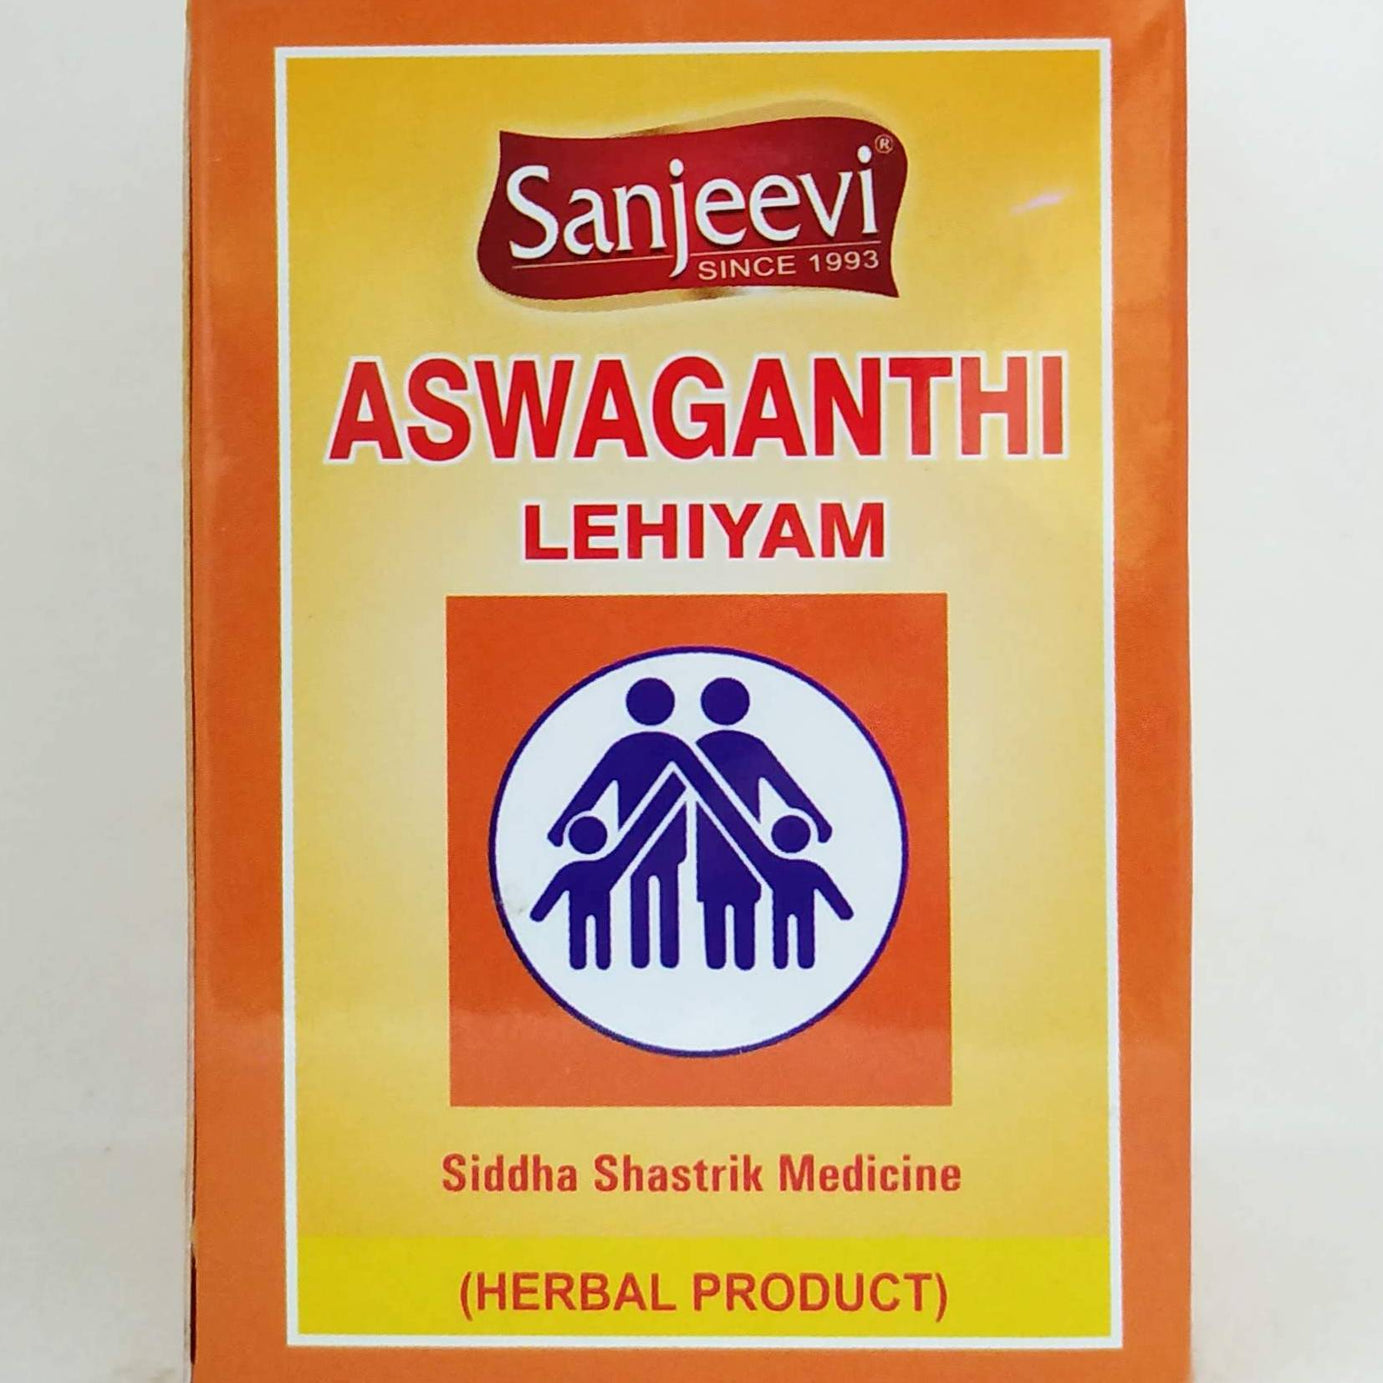 Shop Ashwagandhi Lehyam 250gm at price 195.00 from Sanjeevi Online - Ayush Care